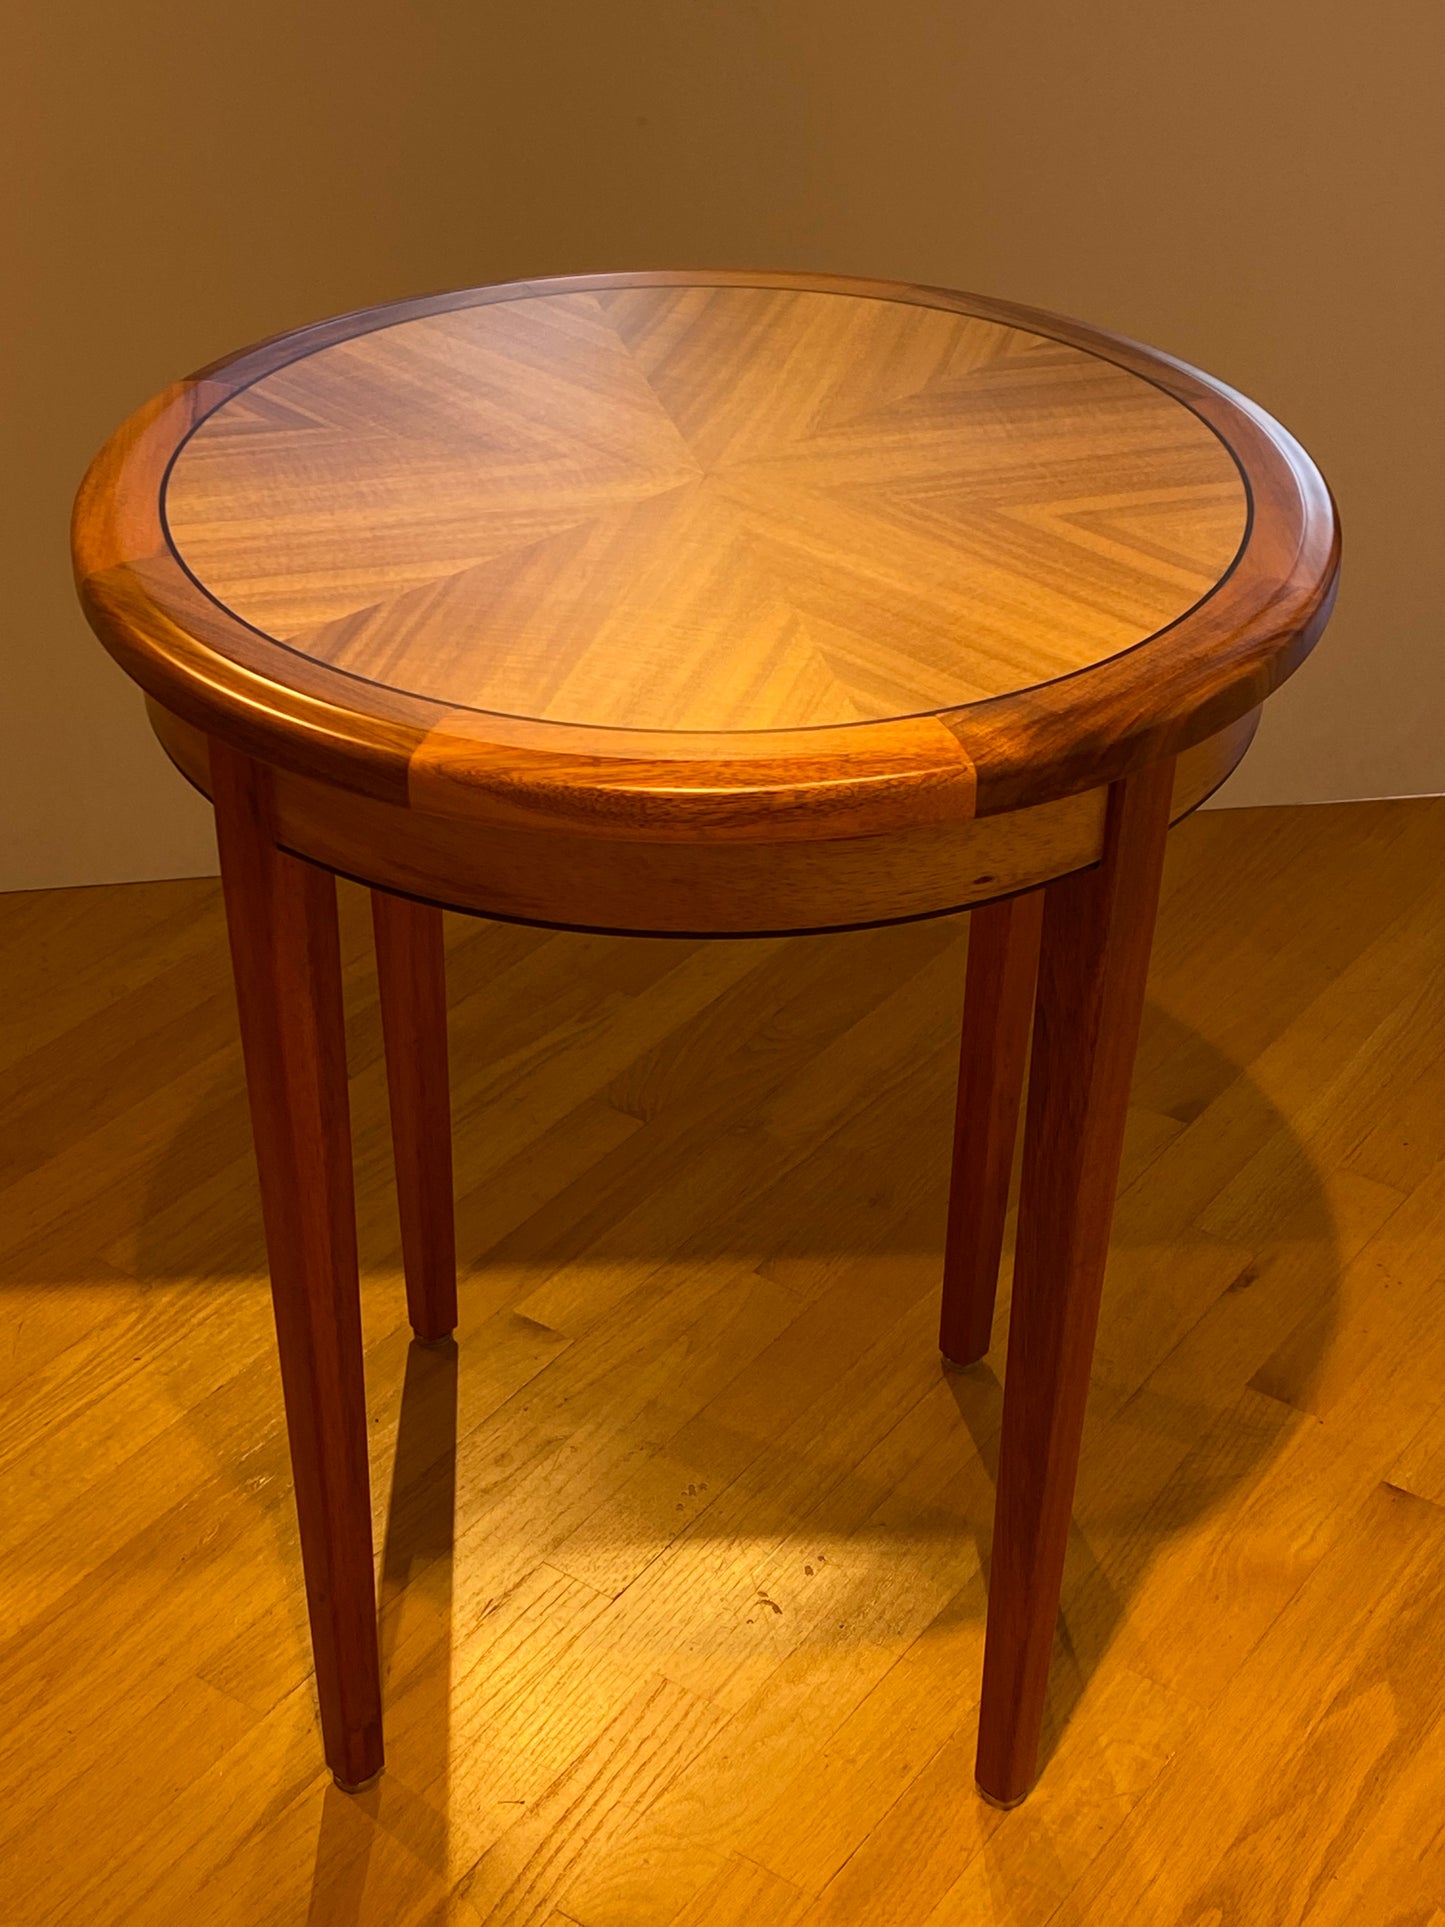 Starburst Koa Wood Side Table